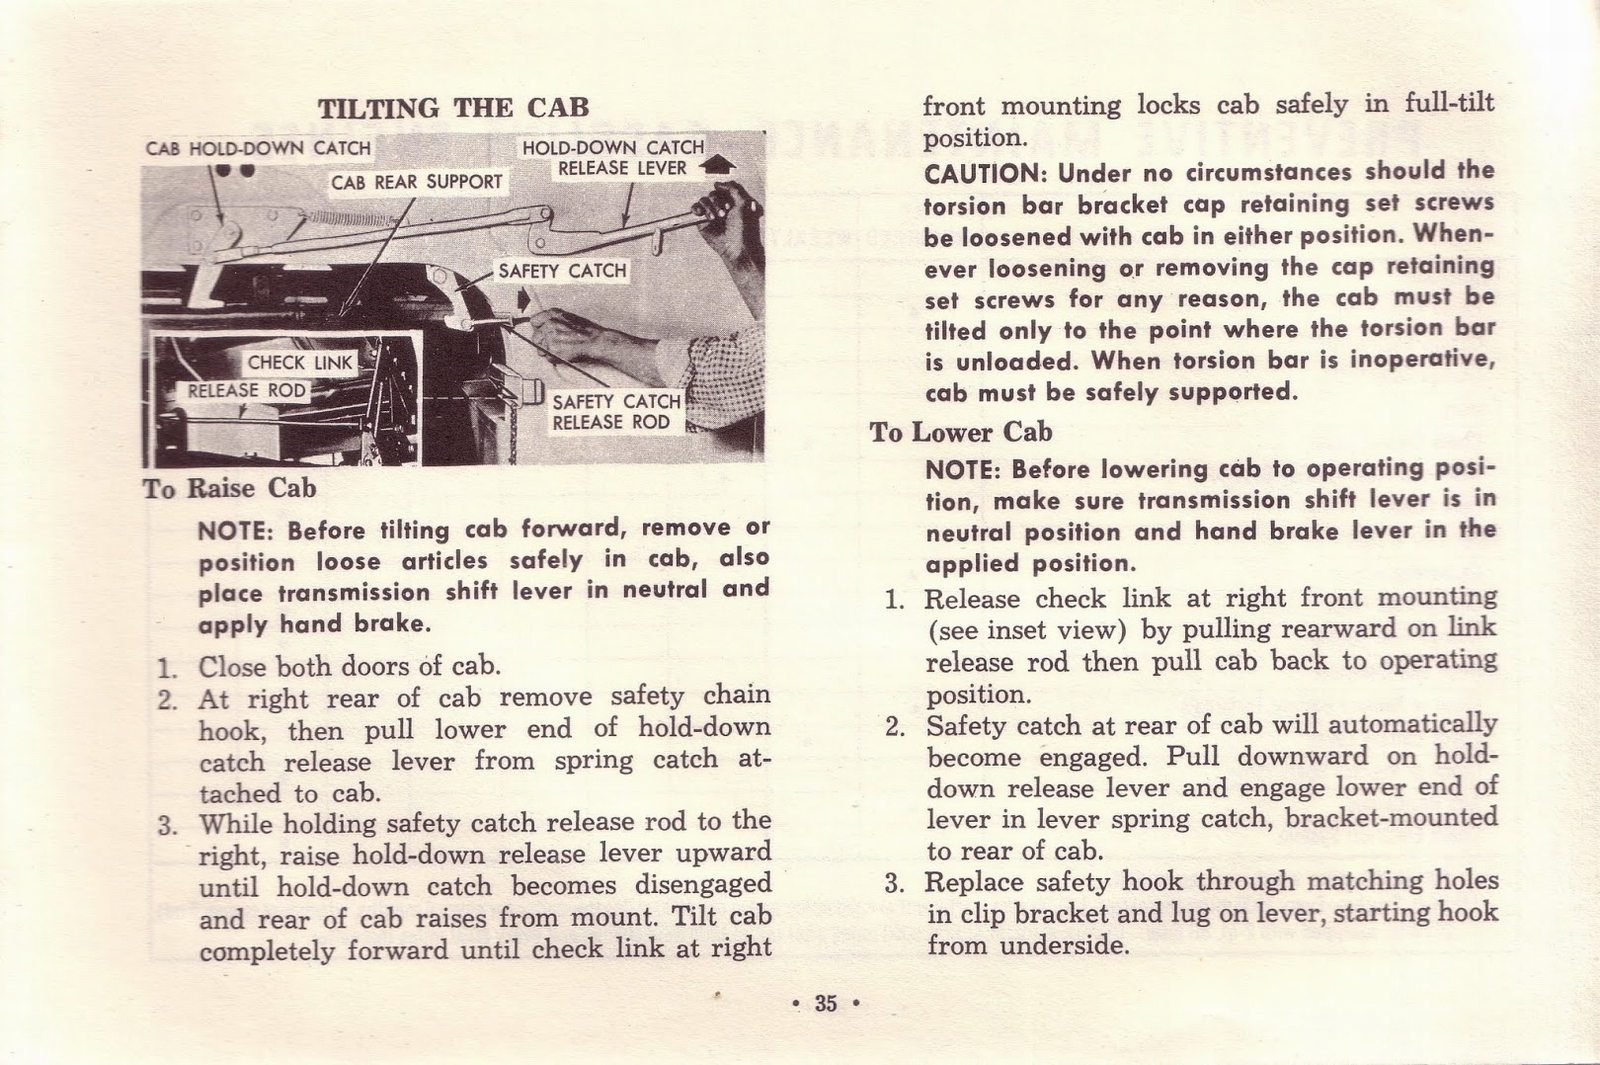 n_1963 Chevrolet Truck Owners Guide-35.jpg